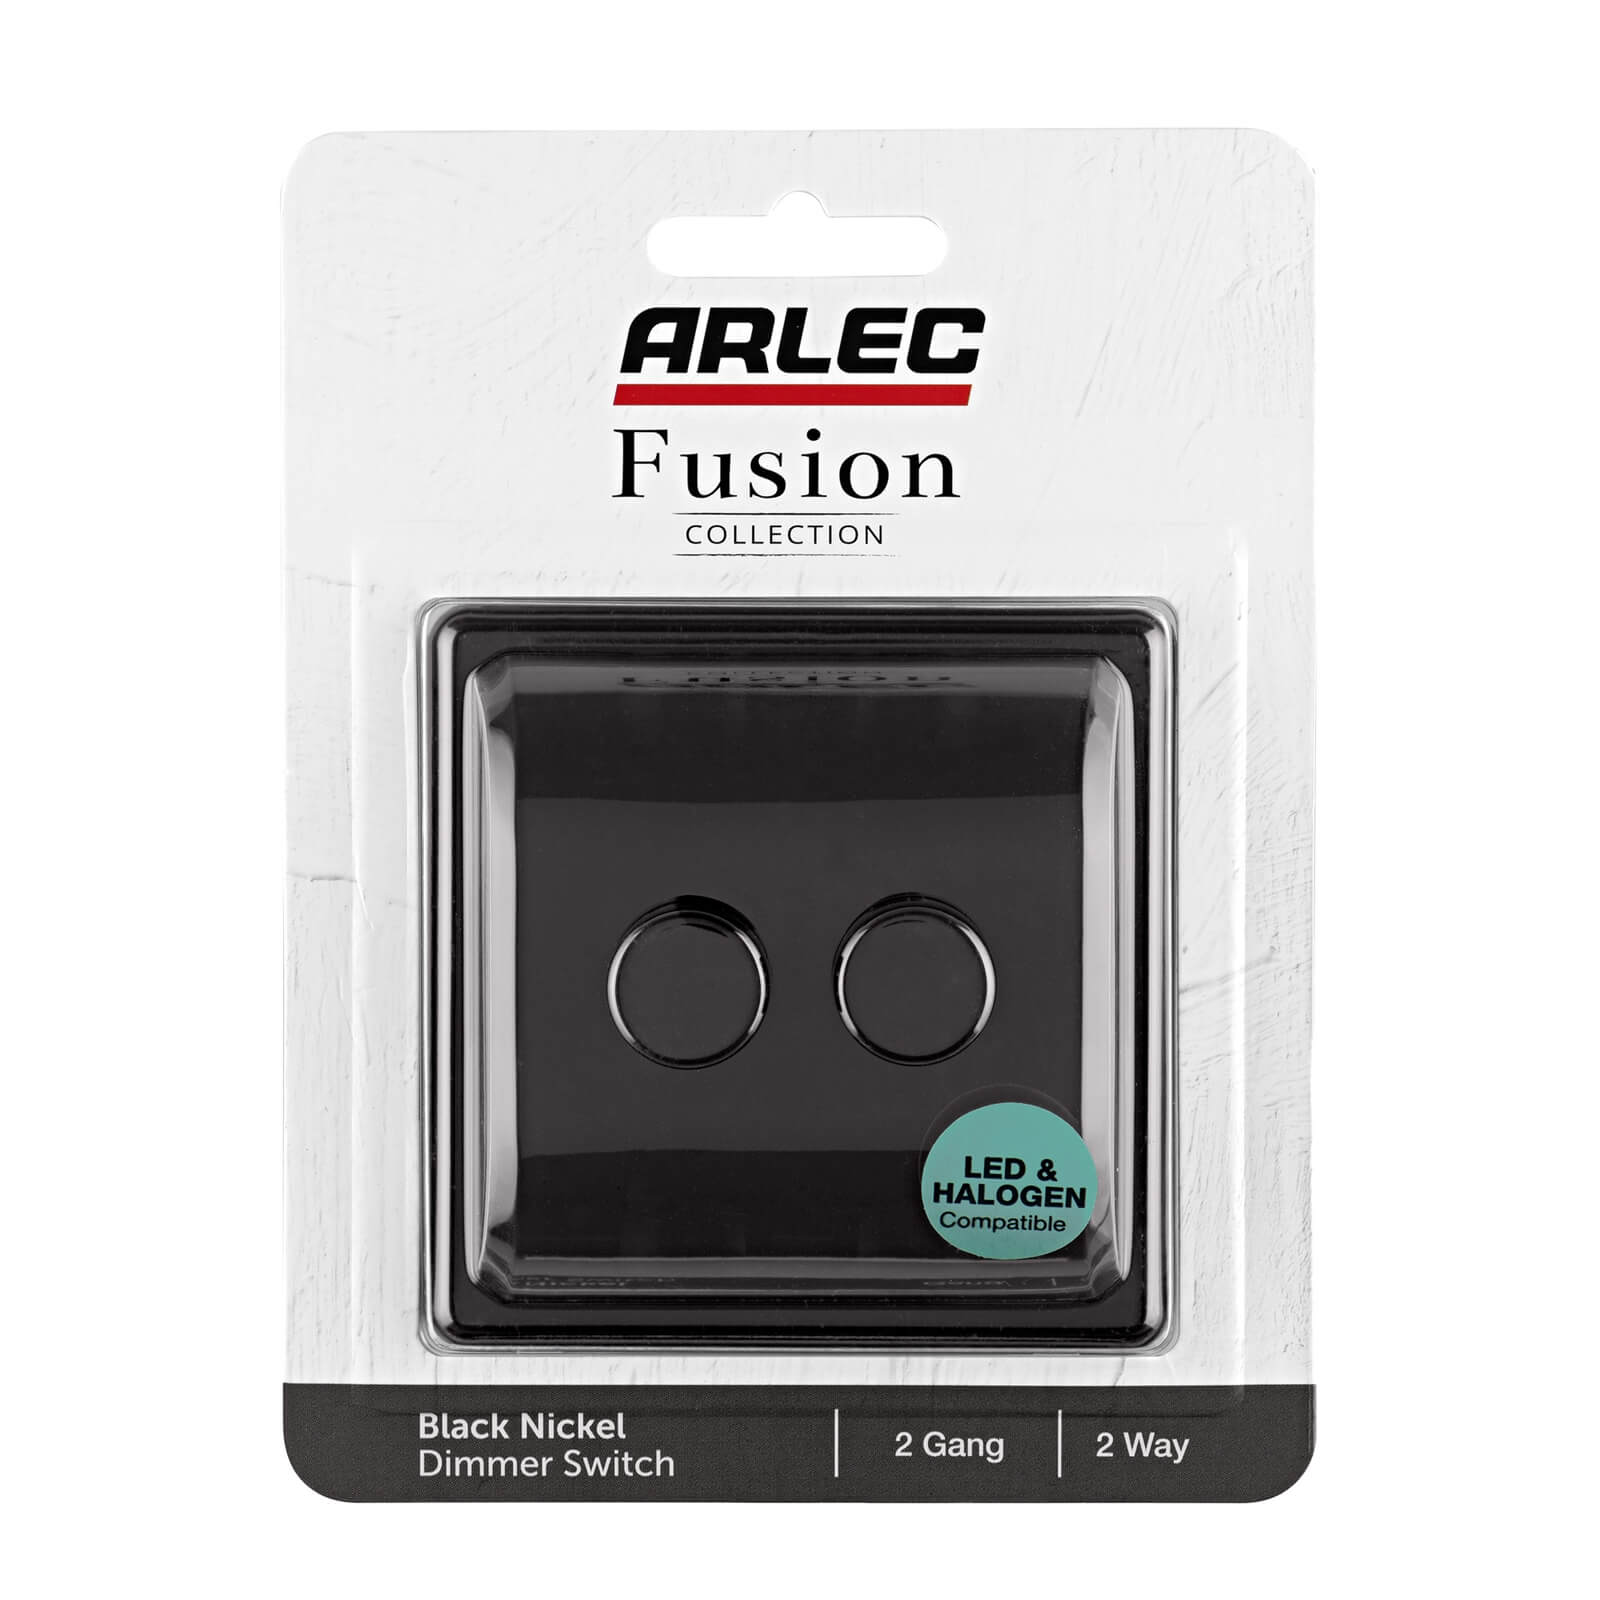 Arlec Fusion 2 Gang 2 Way Black Nickel Dimmer switch